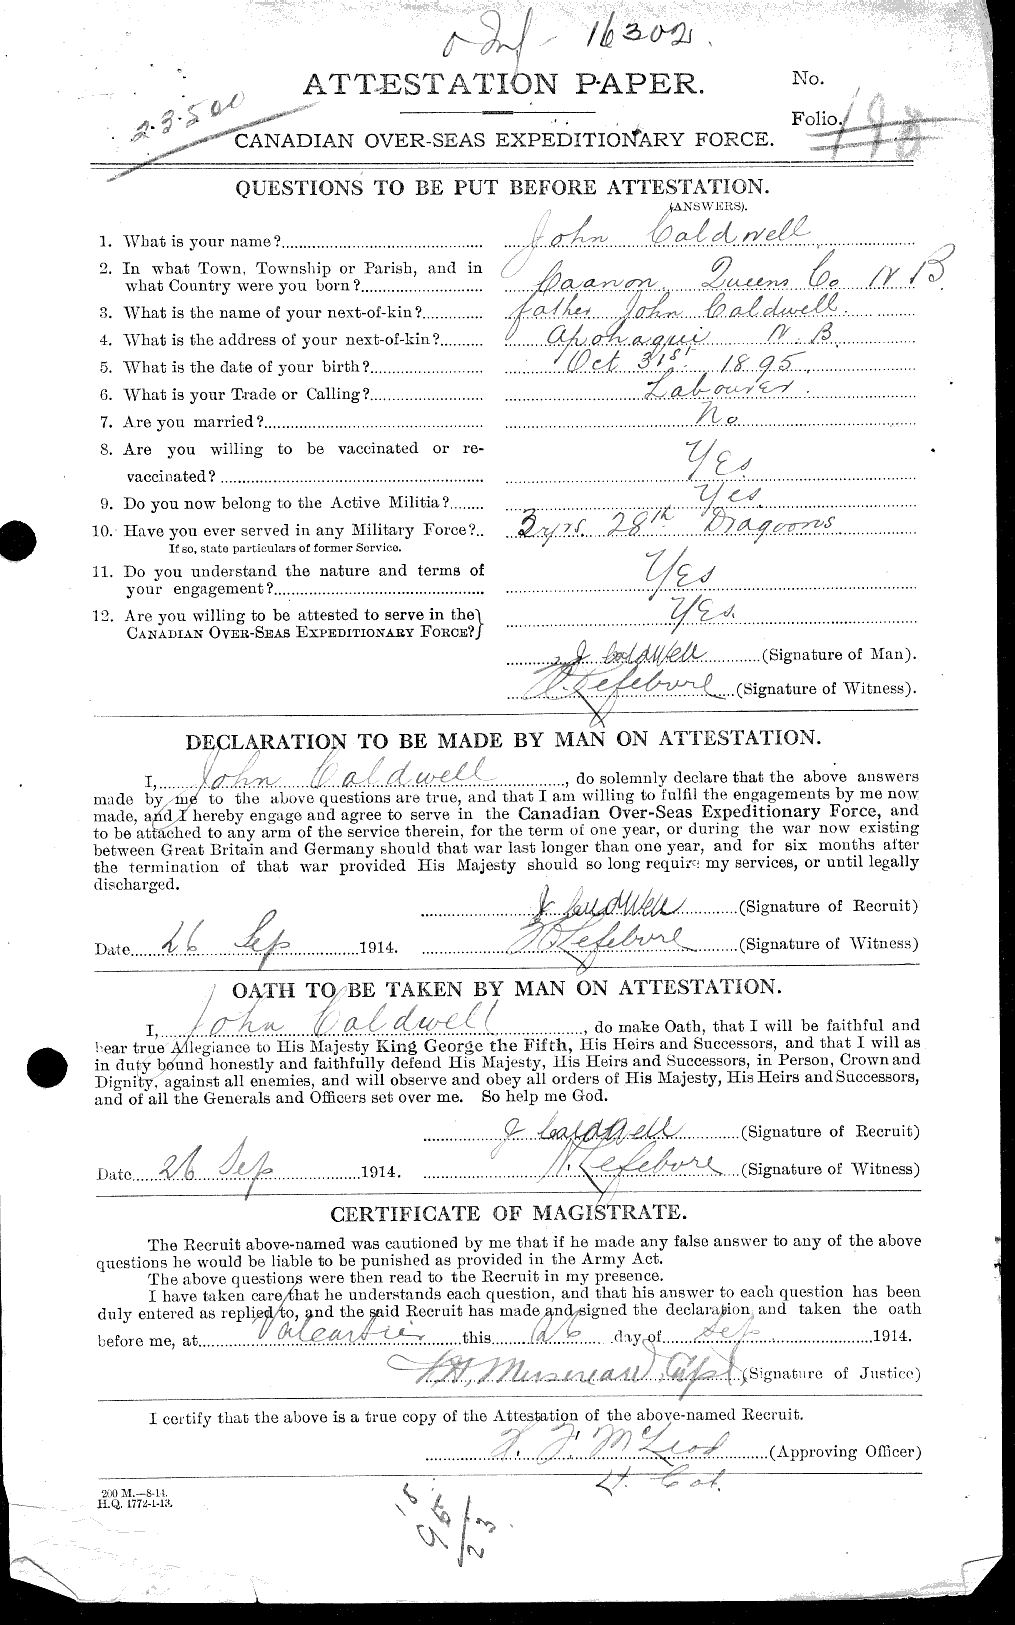 Dossiers du Personnel de la Première Guerre mondiale - CEC 001071a